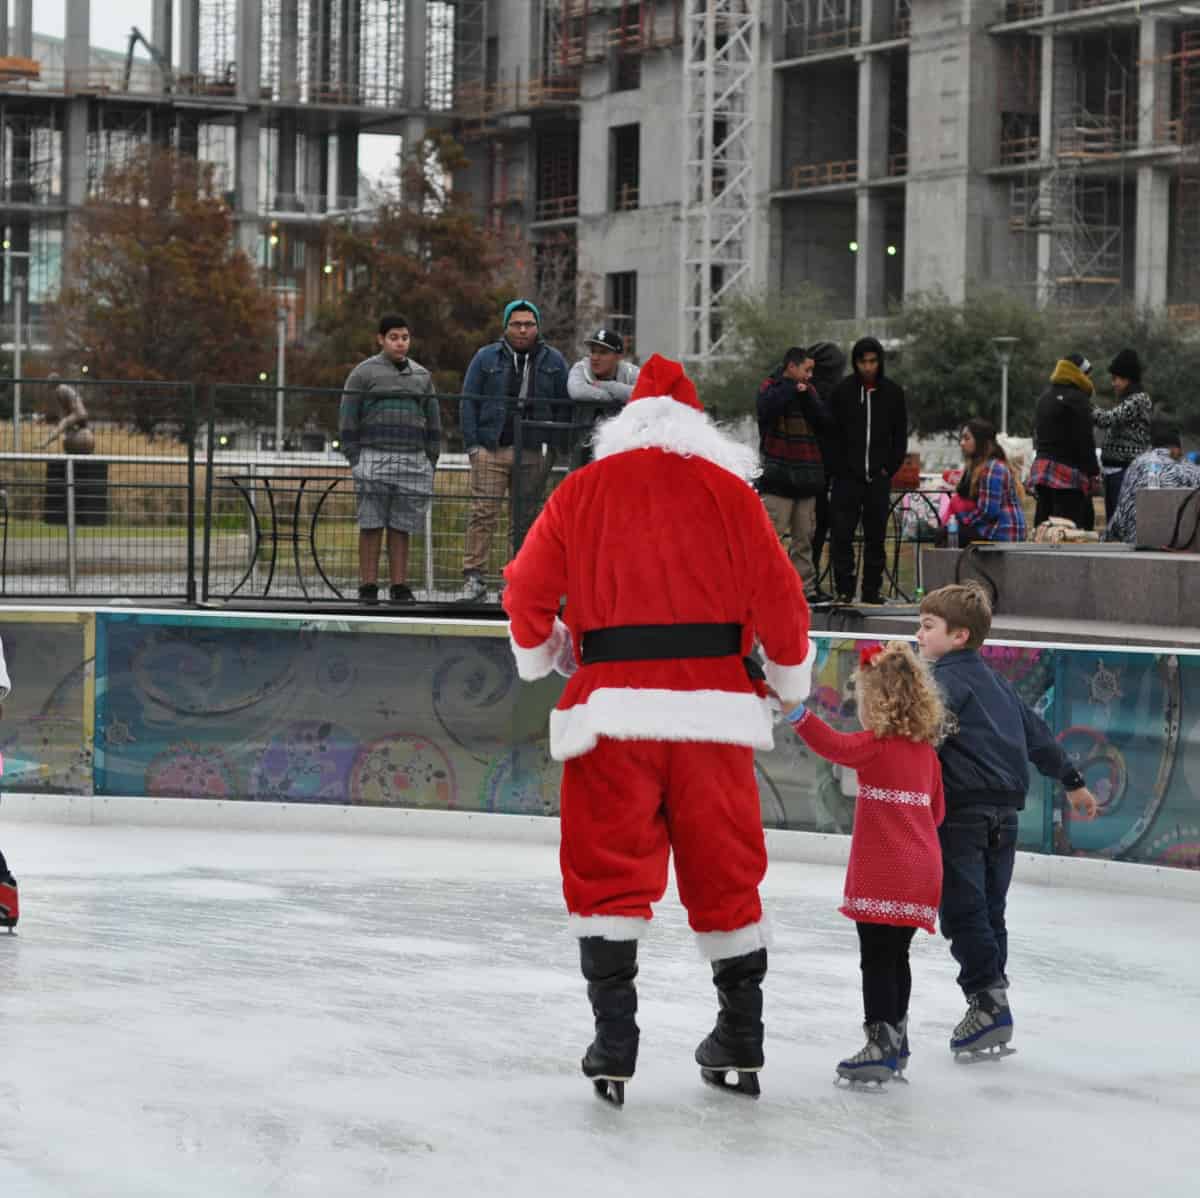 Skating with Santa at Discovery Green